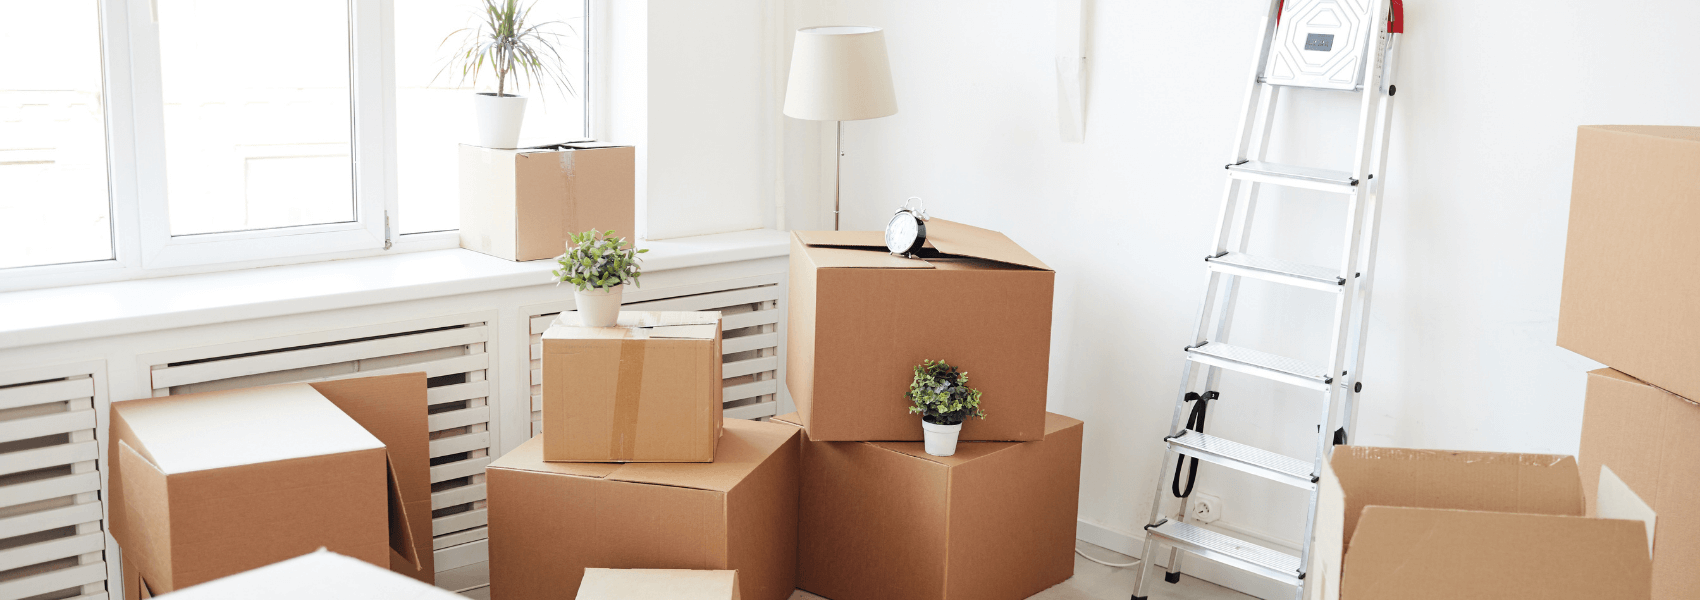 Indskudslån – Har du råd til at flytte?